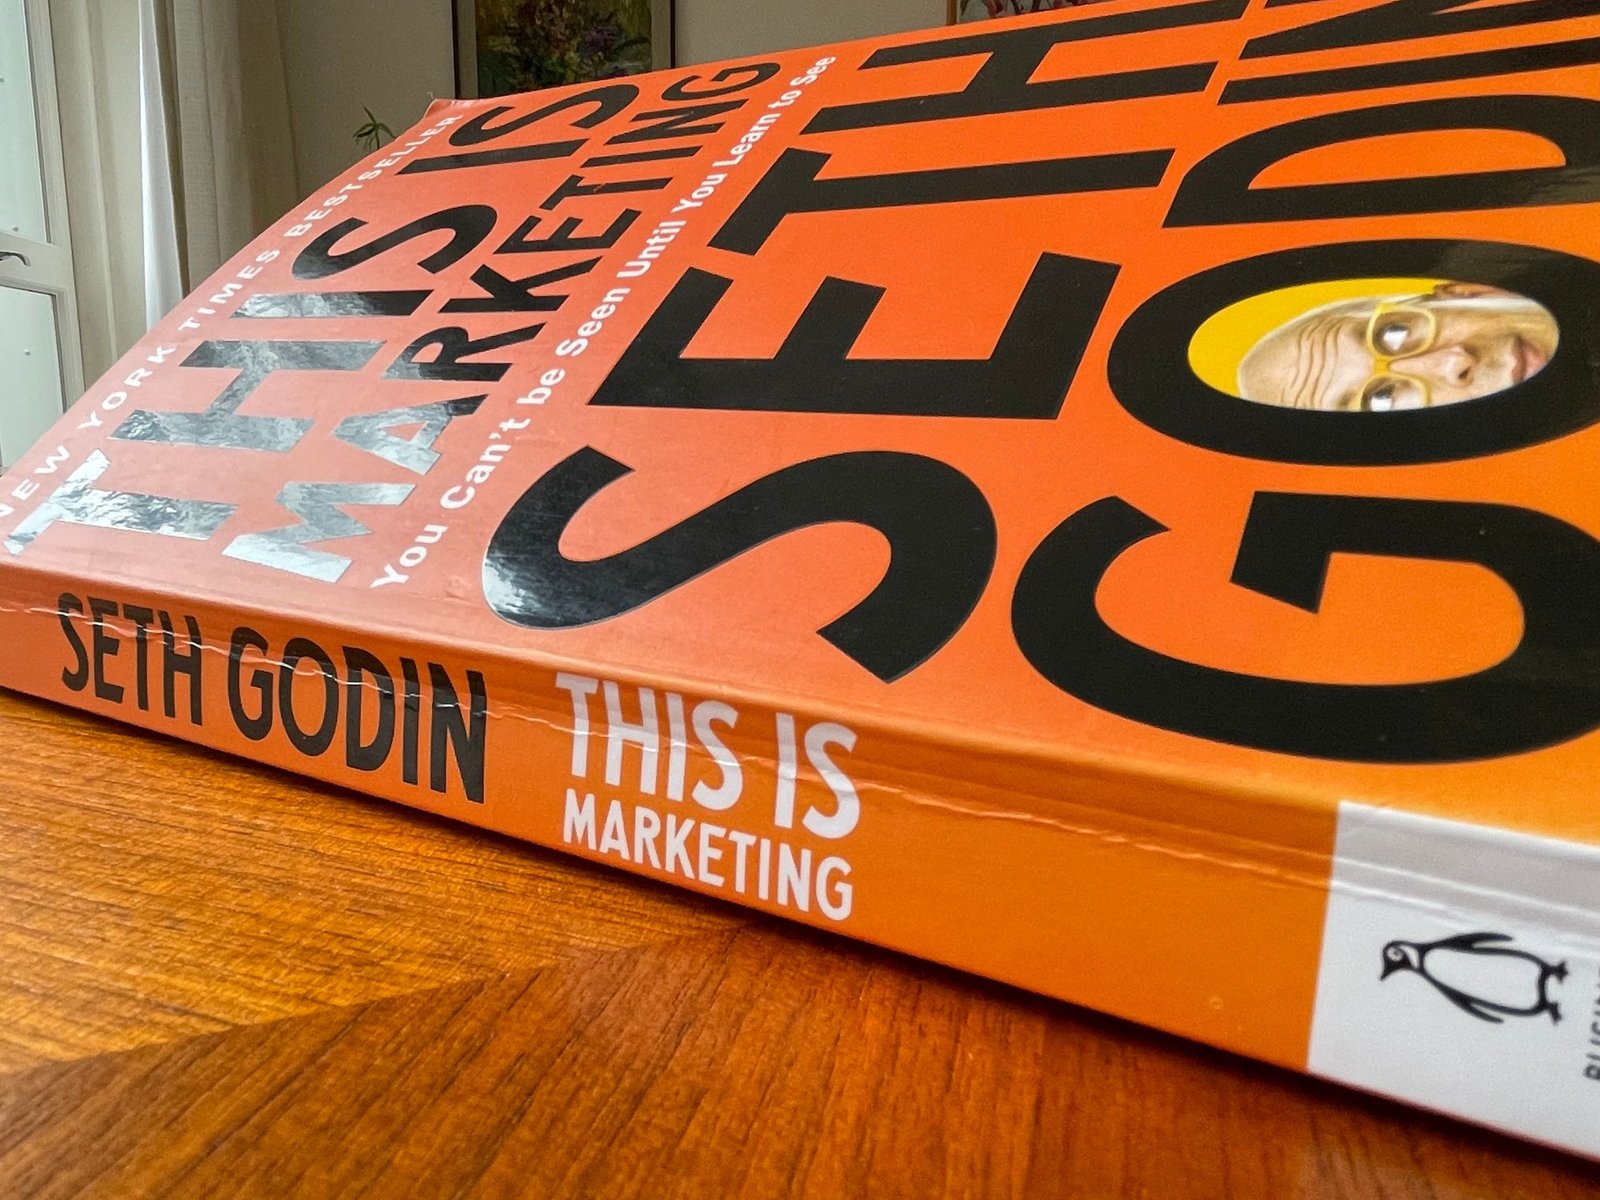 Recensie: This Is Marketing, Seth Godin